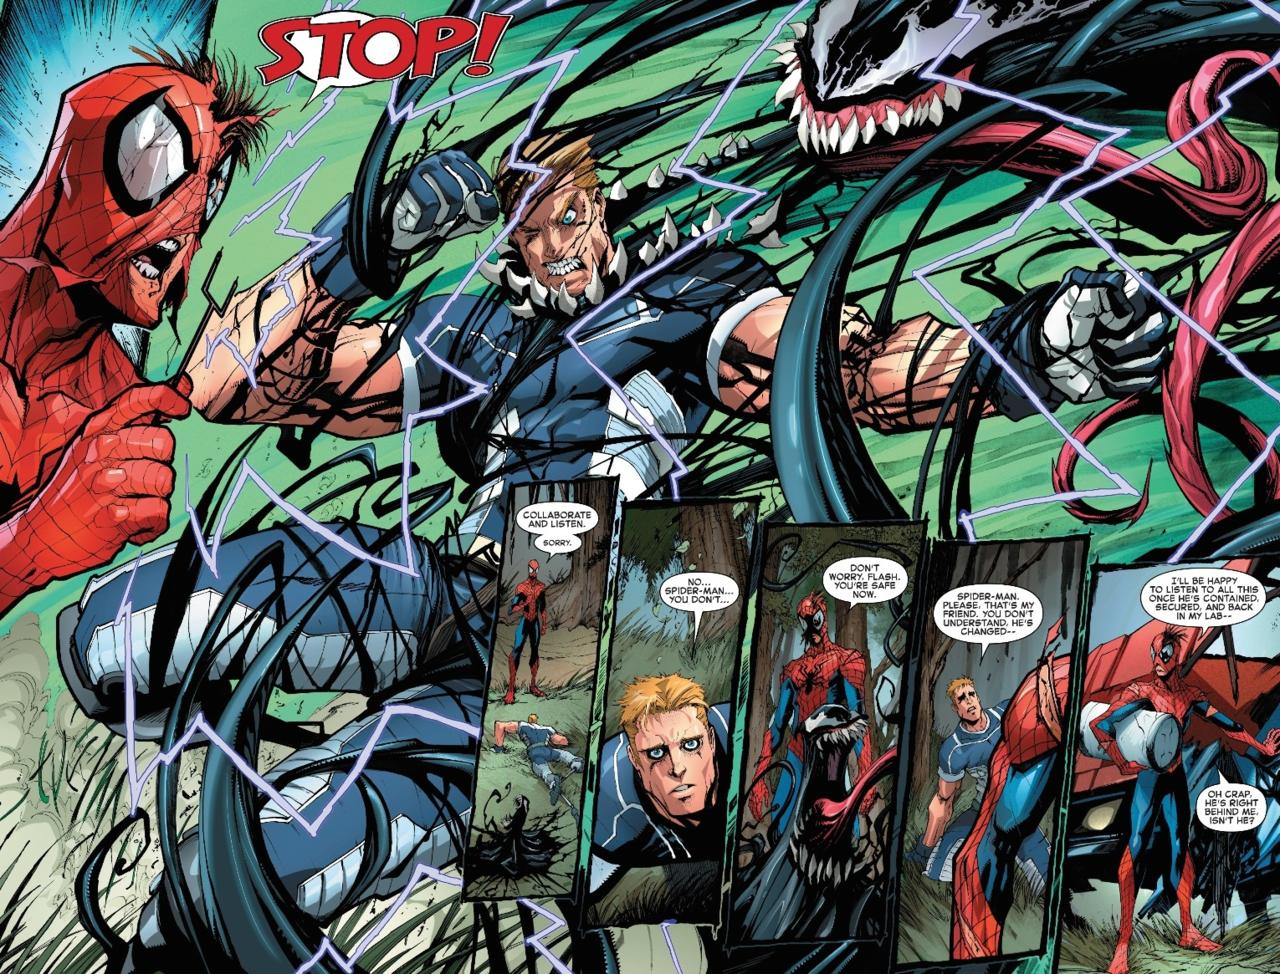 Venom: Space Knight #11